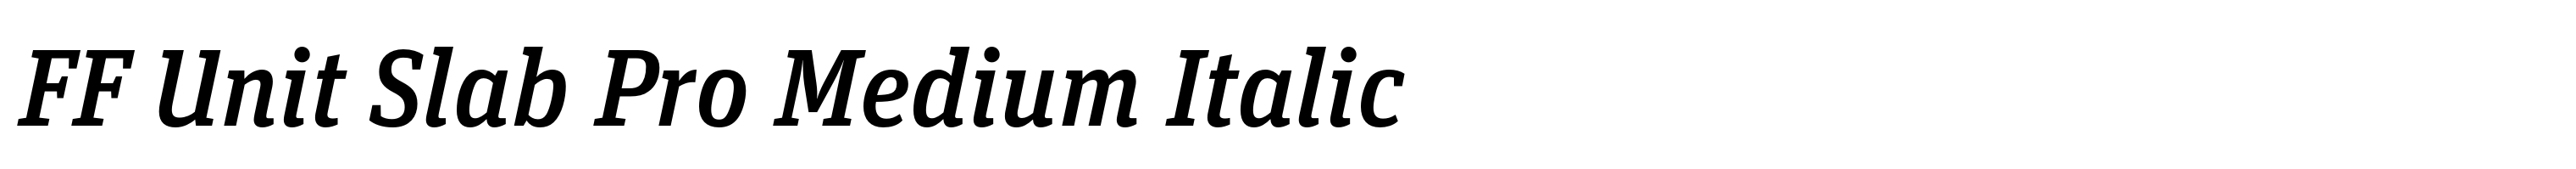 FF Unit Slab Pro Medium Italic